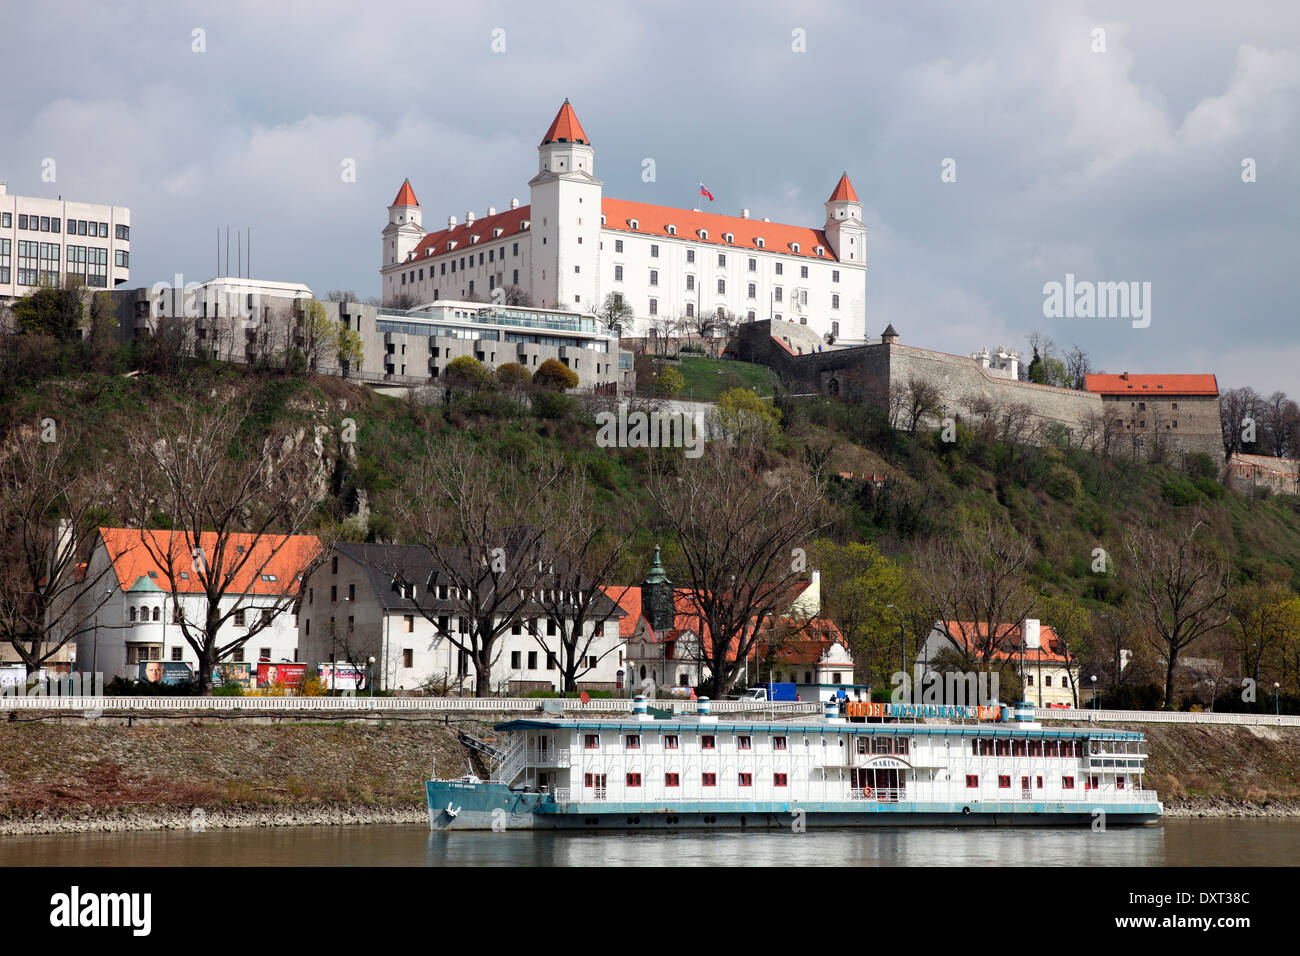 Bratislava Castle overlooking the River Danube in Slovakia Stock Photo